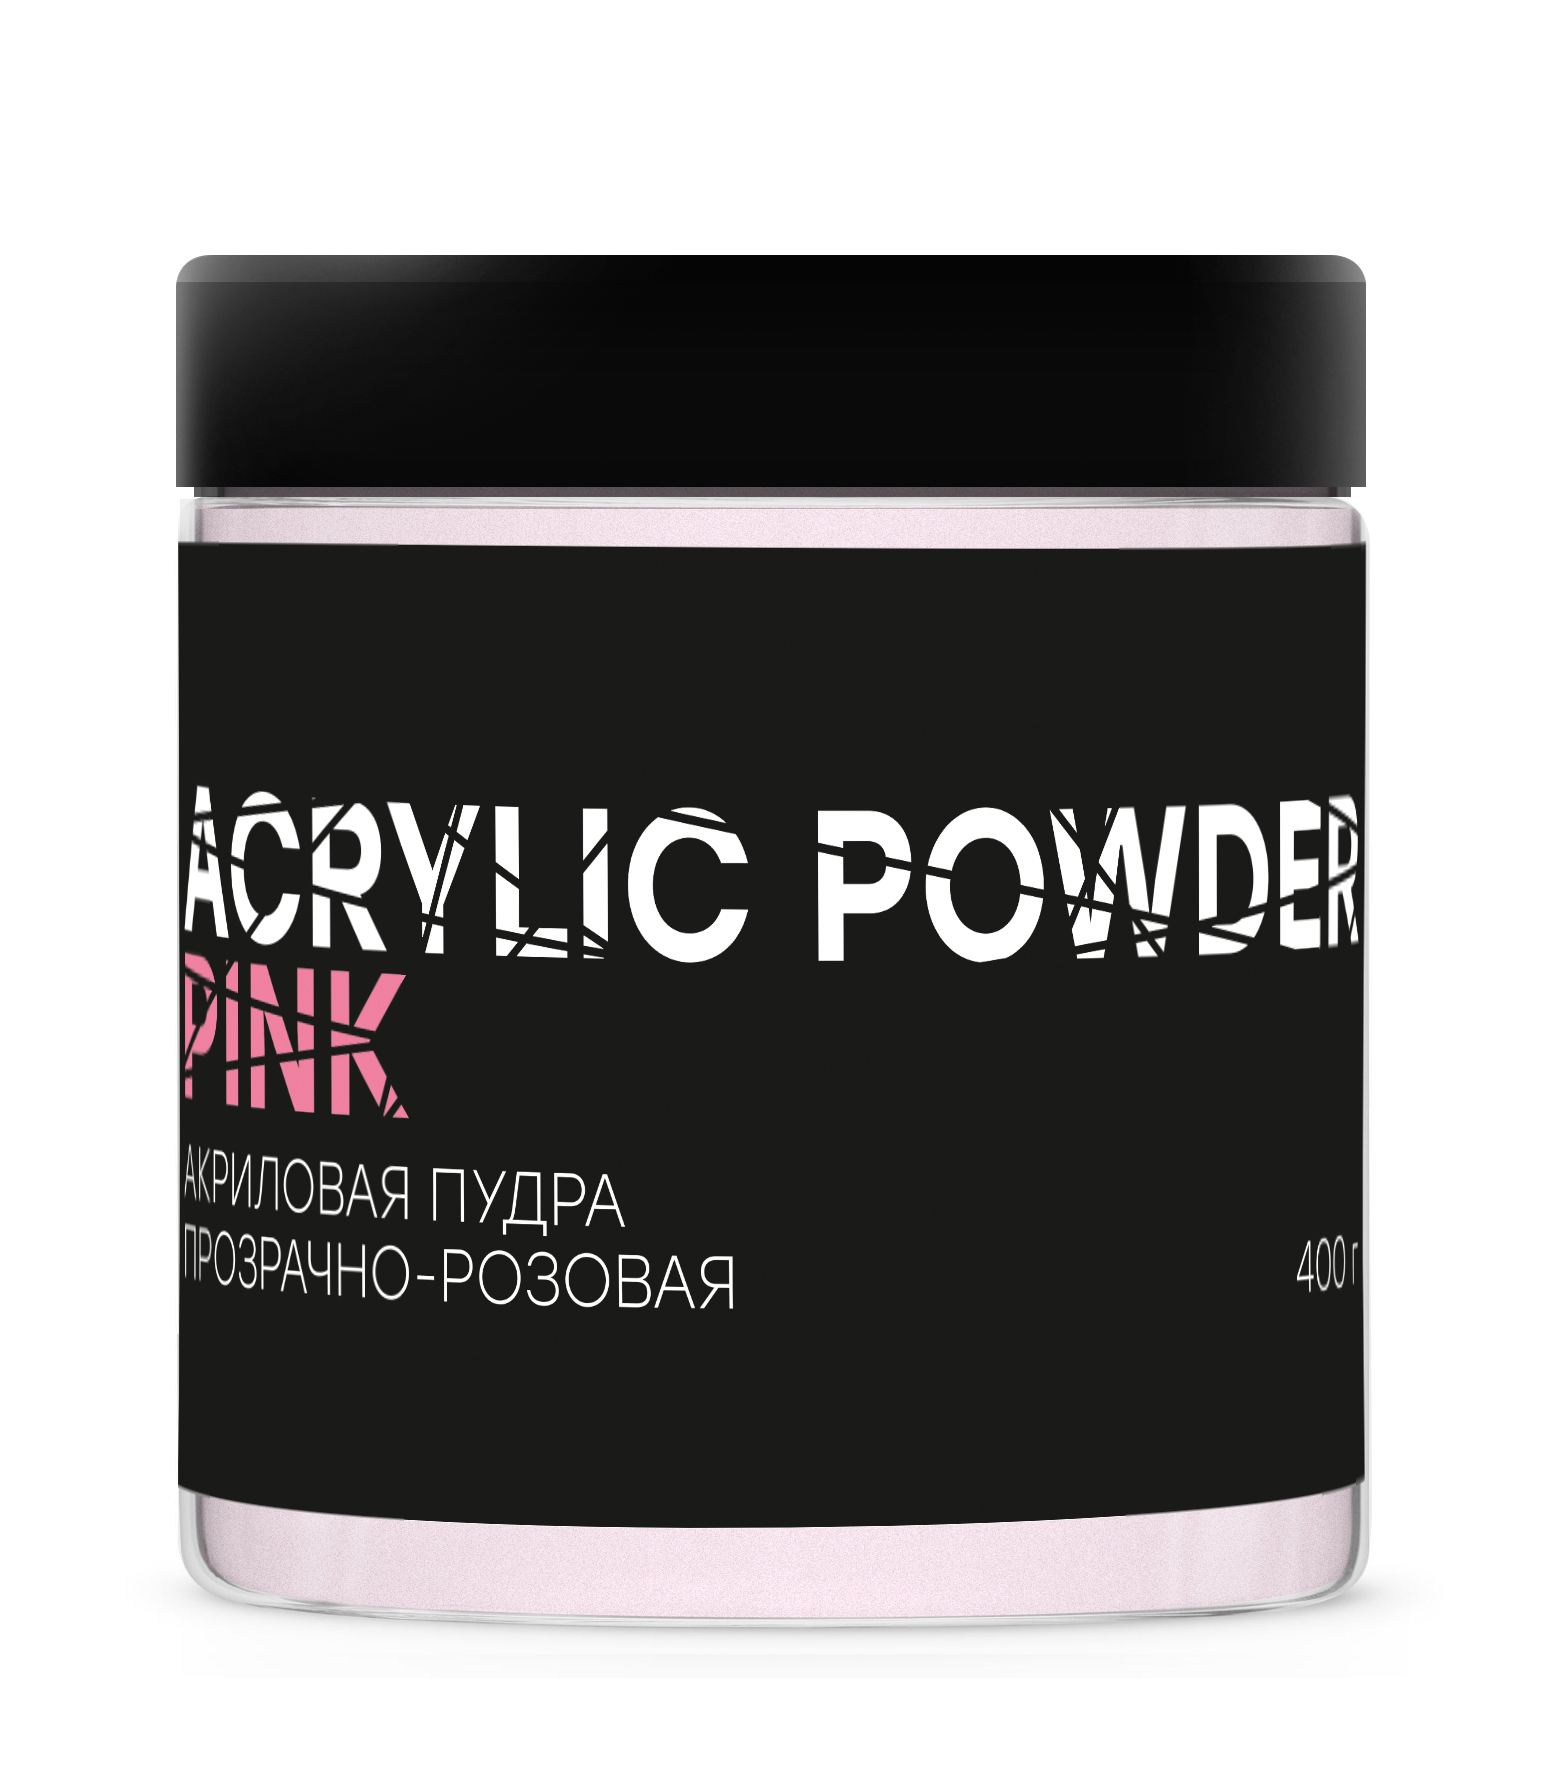 Акриловая пудра InGarden Acrylic Powder Pink прозрачно-розовая, 400 г